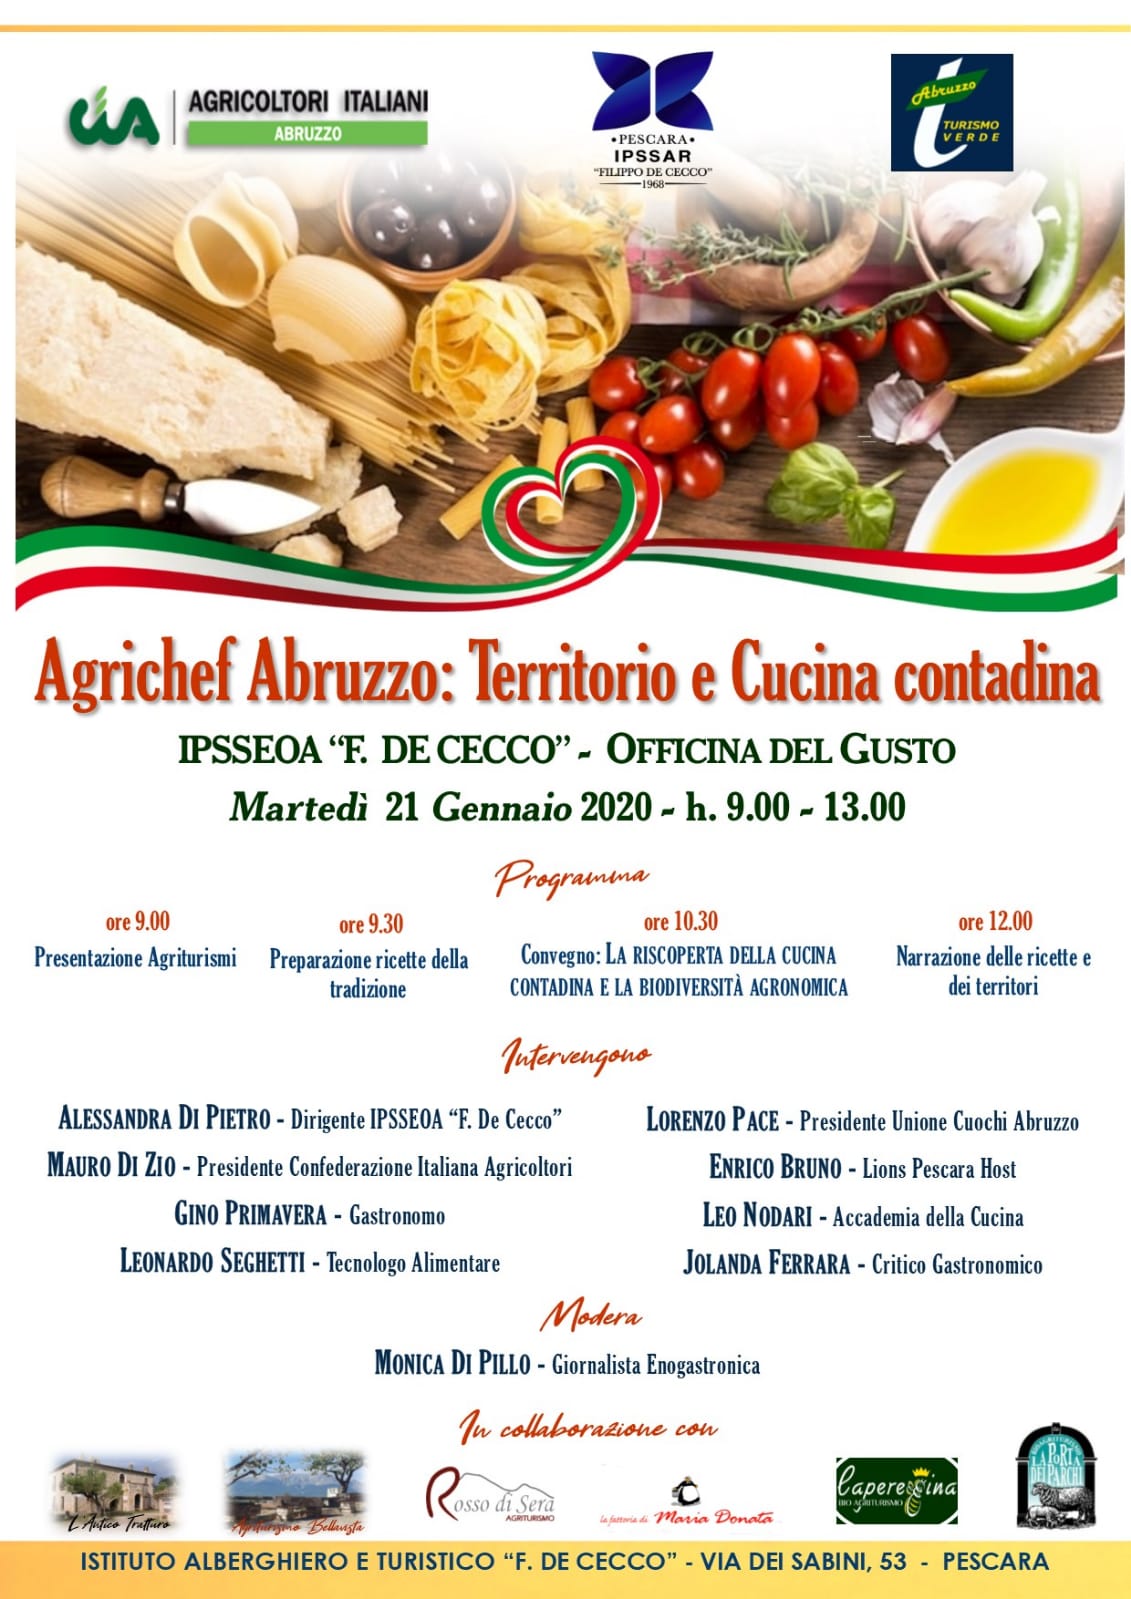 Festival degli Agrichef Abruzzo: appuntamento il 21 gennaio all